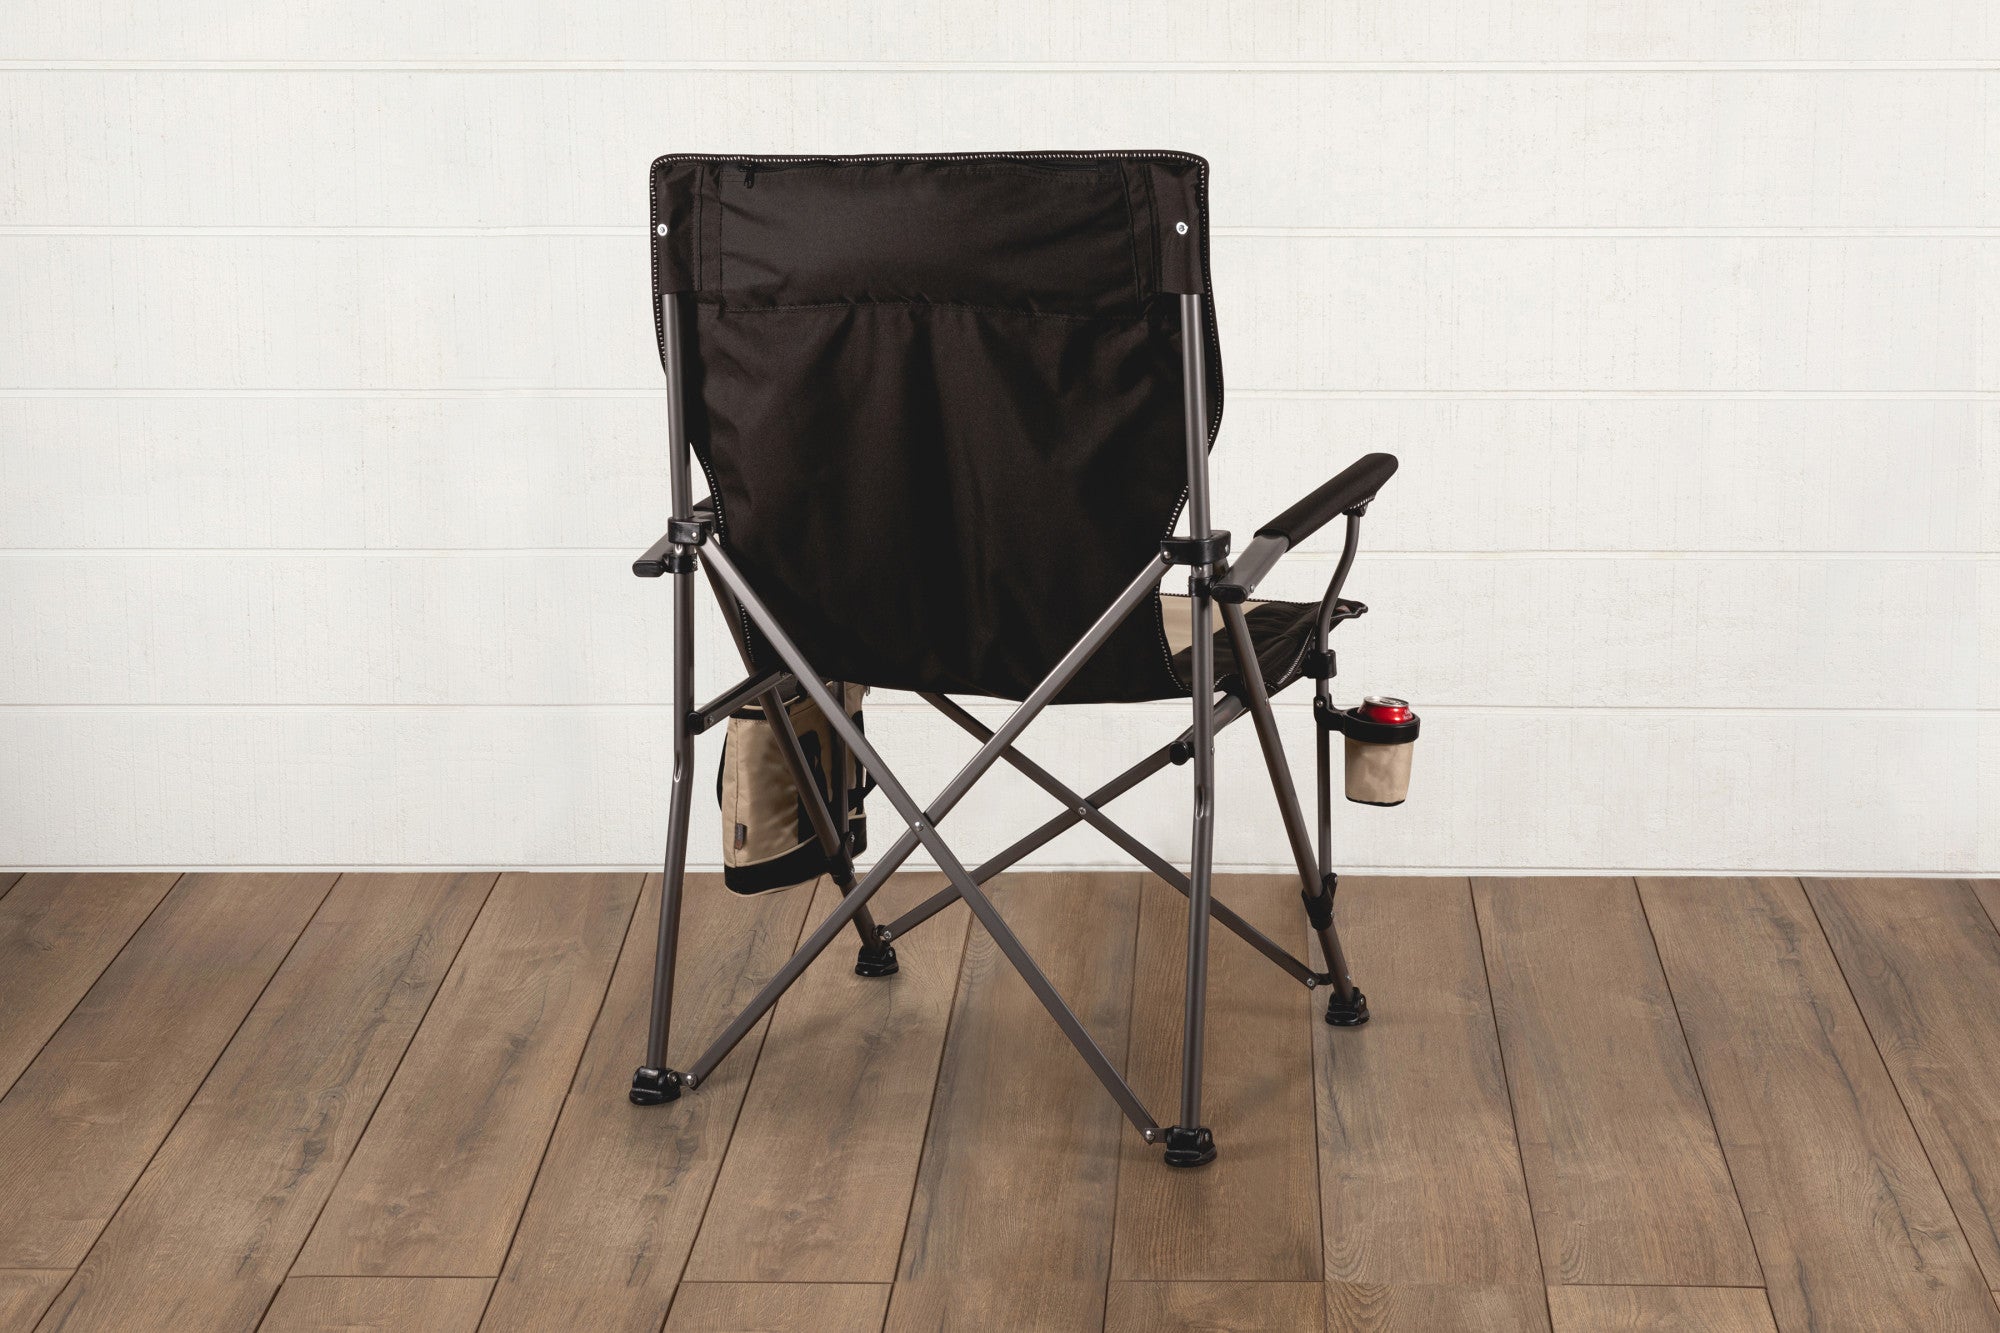 Kentucky Wildcats - Big Bear XXL Camping Chair with Cooler